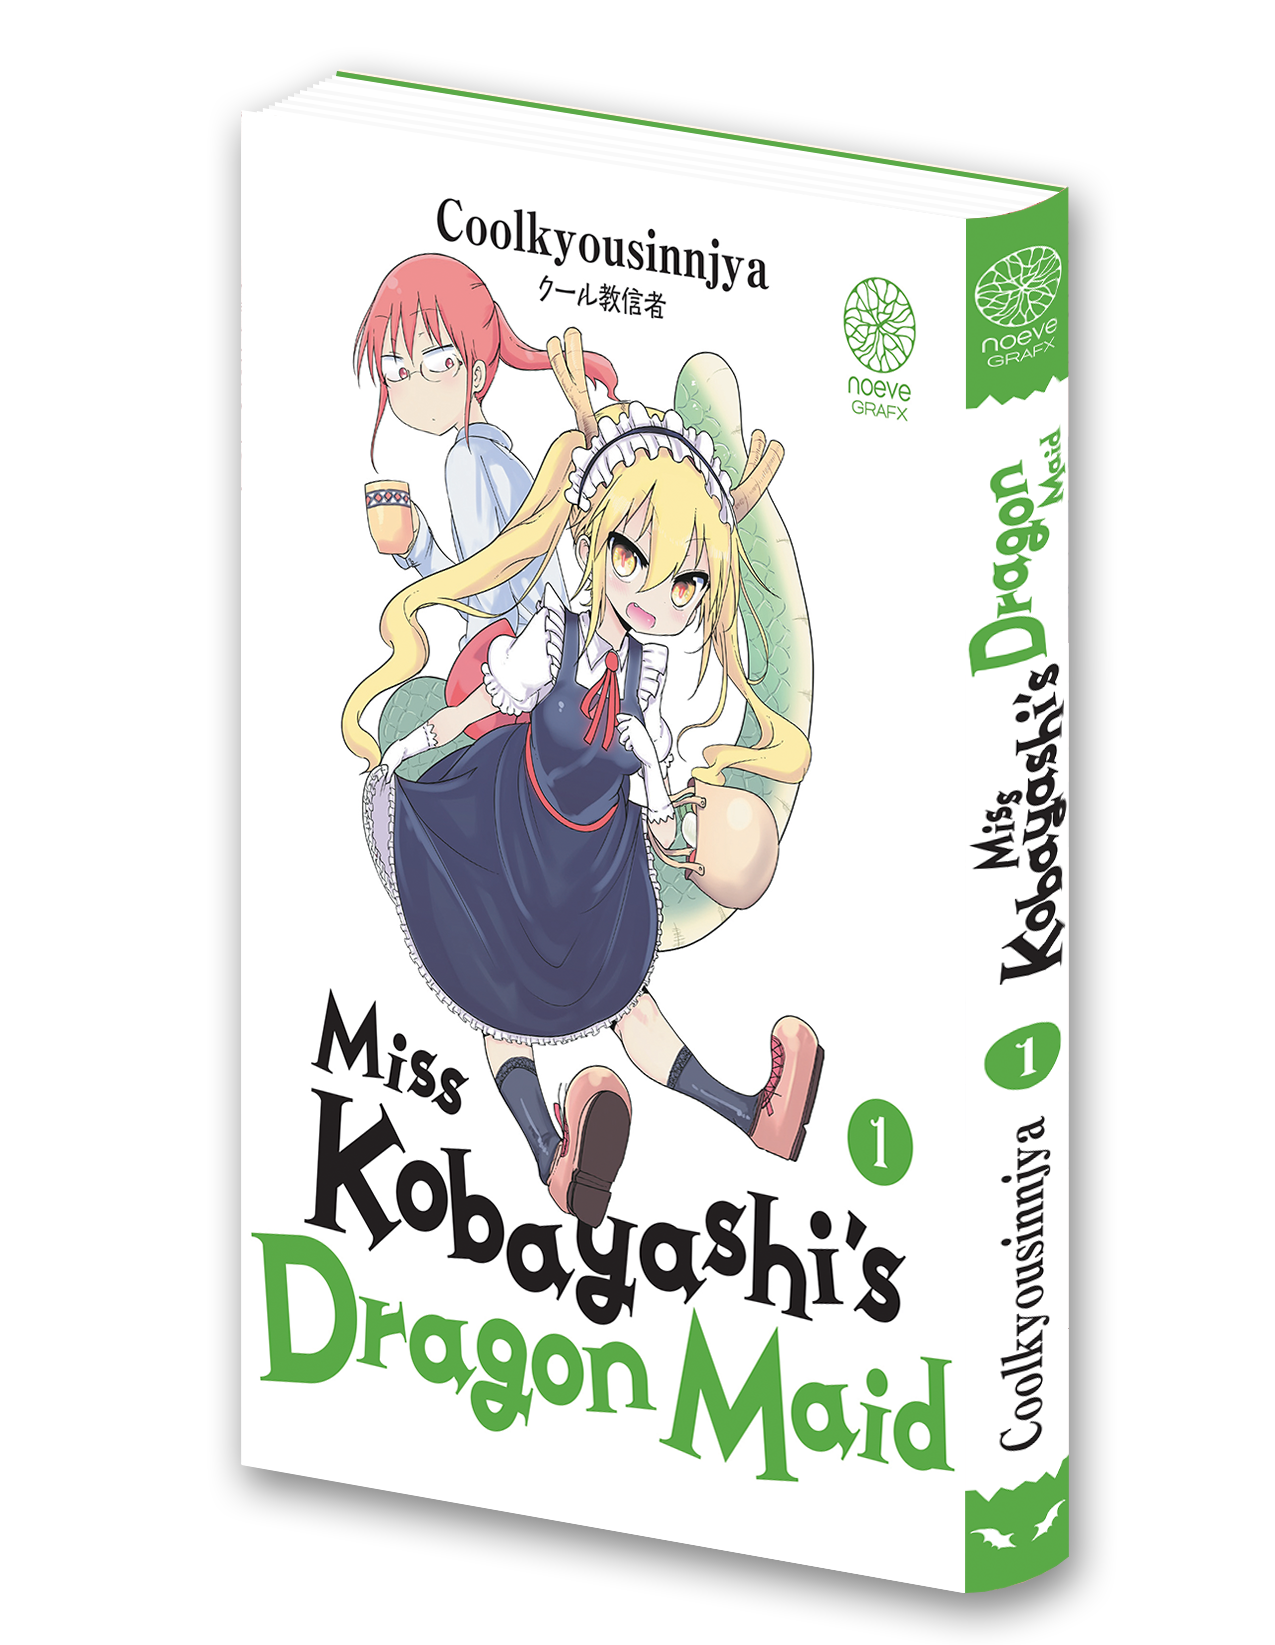 Visuel 3D du manga Miss Kobayashi's Dragon Maid